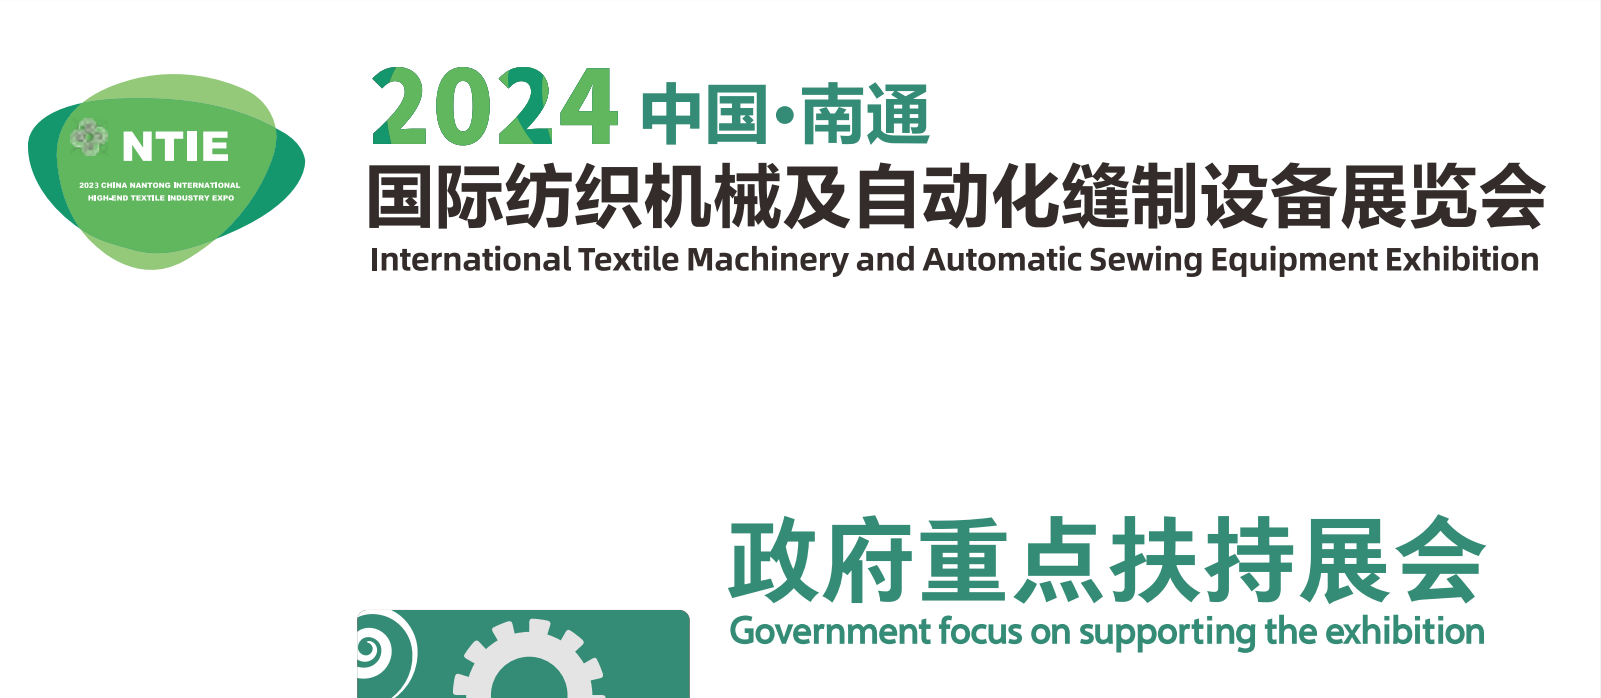 相约2024丨NTIE中国南通国际纺织机械及自动化缝制设备展览会火热招展中!